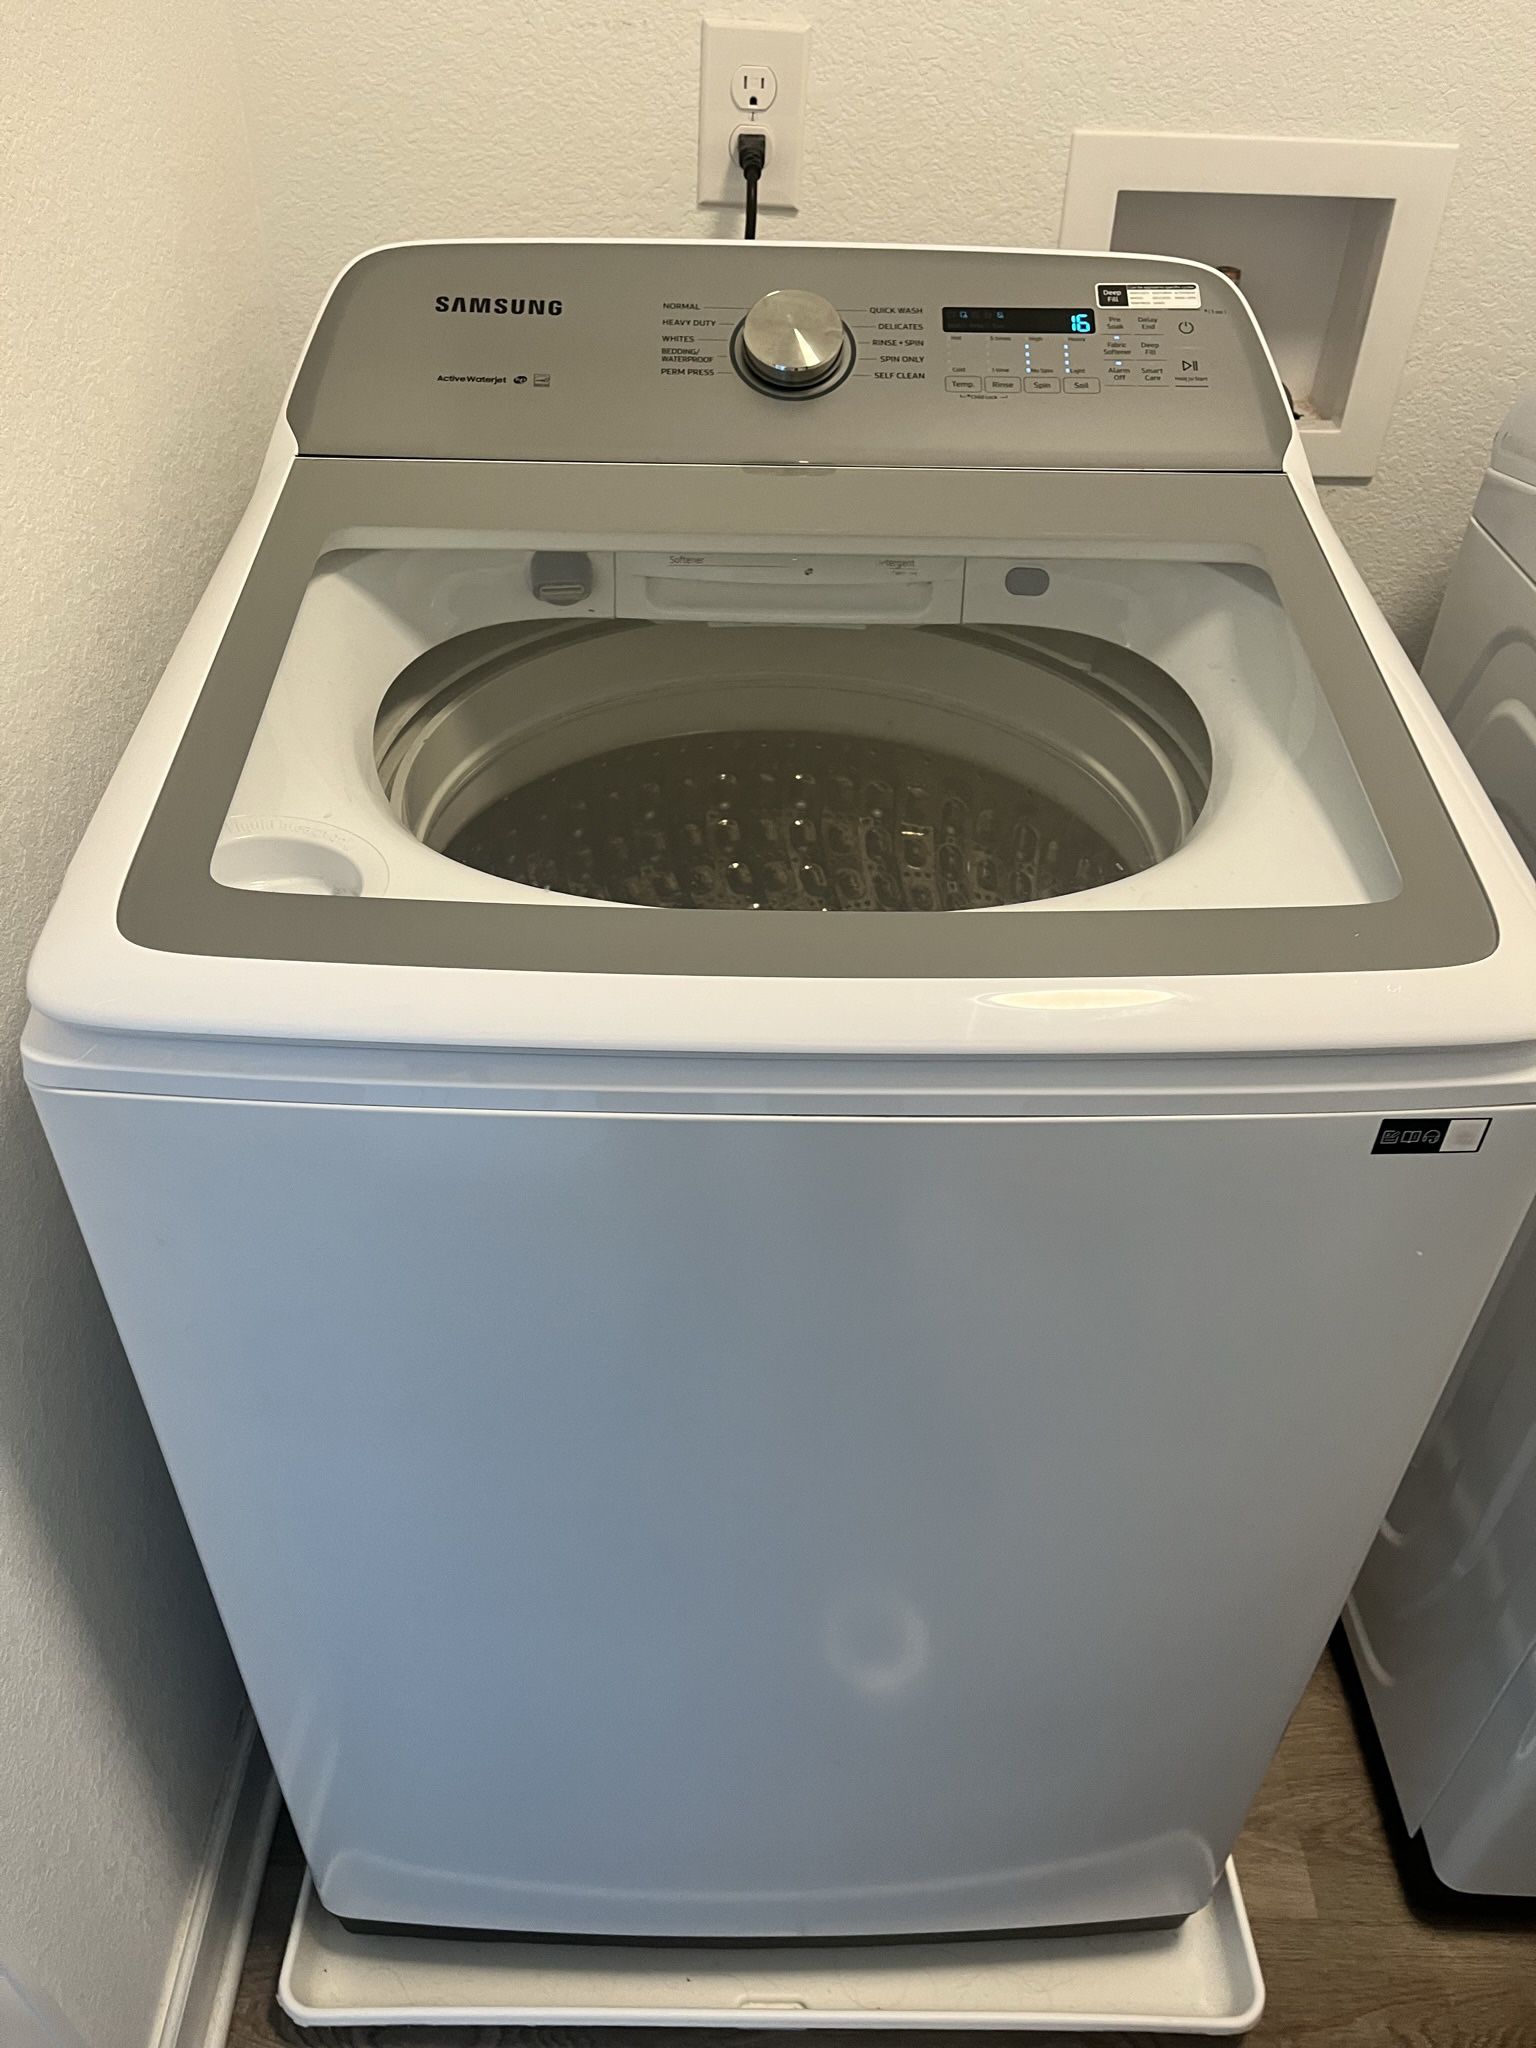 7.5 CU Samsung Washer & Dryer